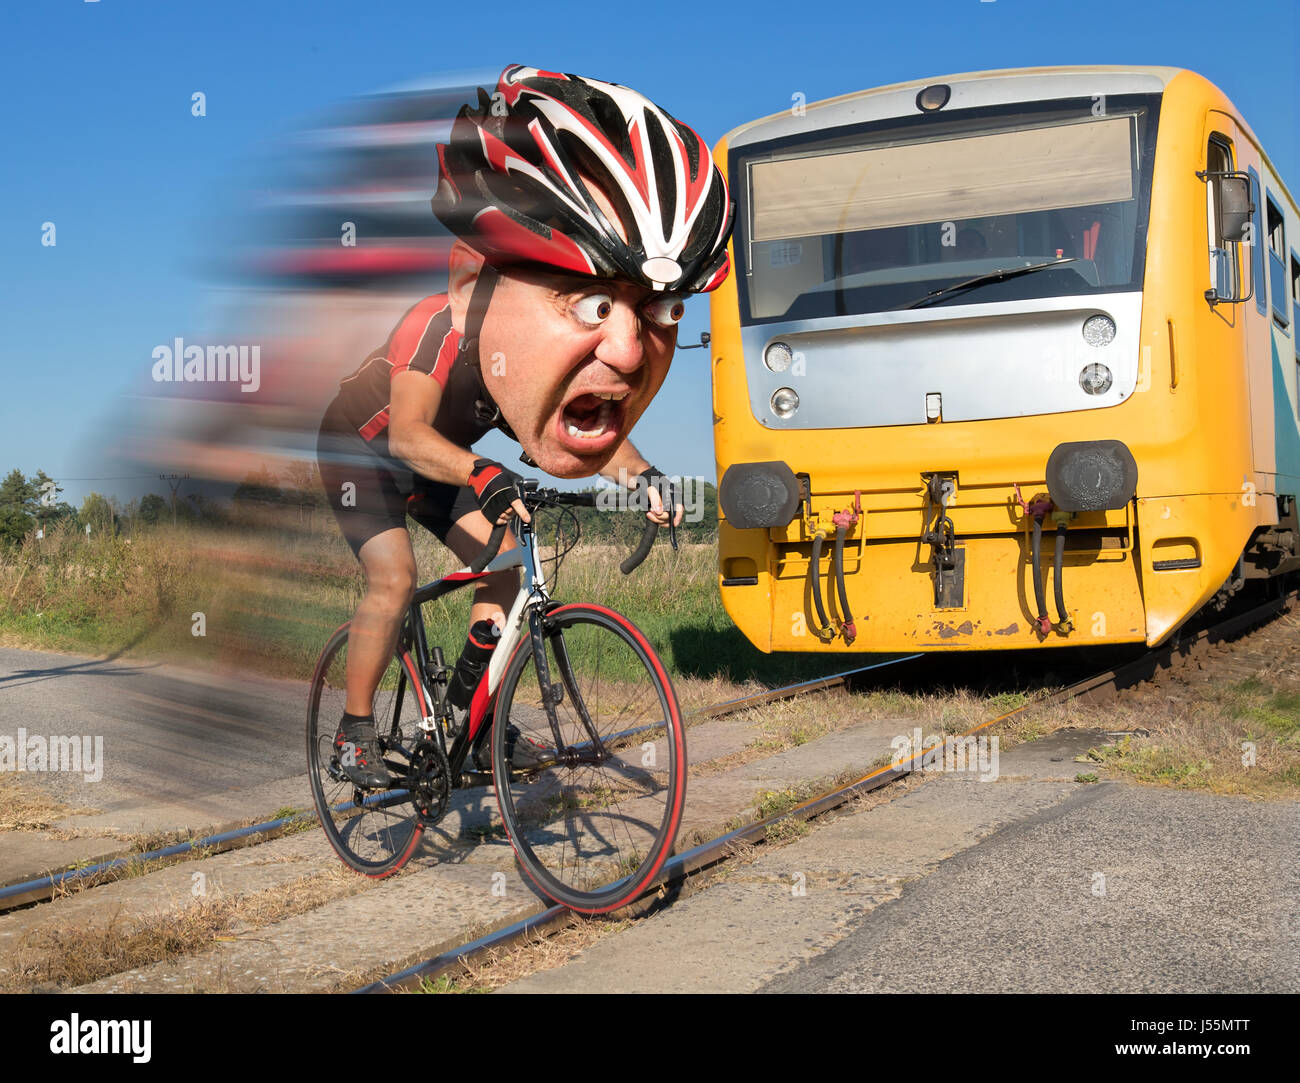 Cycliste est terrifié par le train avant de se précipiter sur les voies. Choqué biker ride un passage à niveau à l'avant d'un train qui approche. Banque D'Images